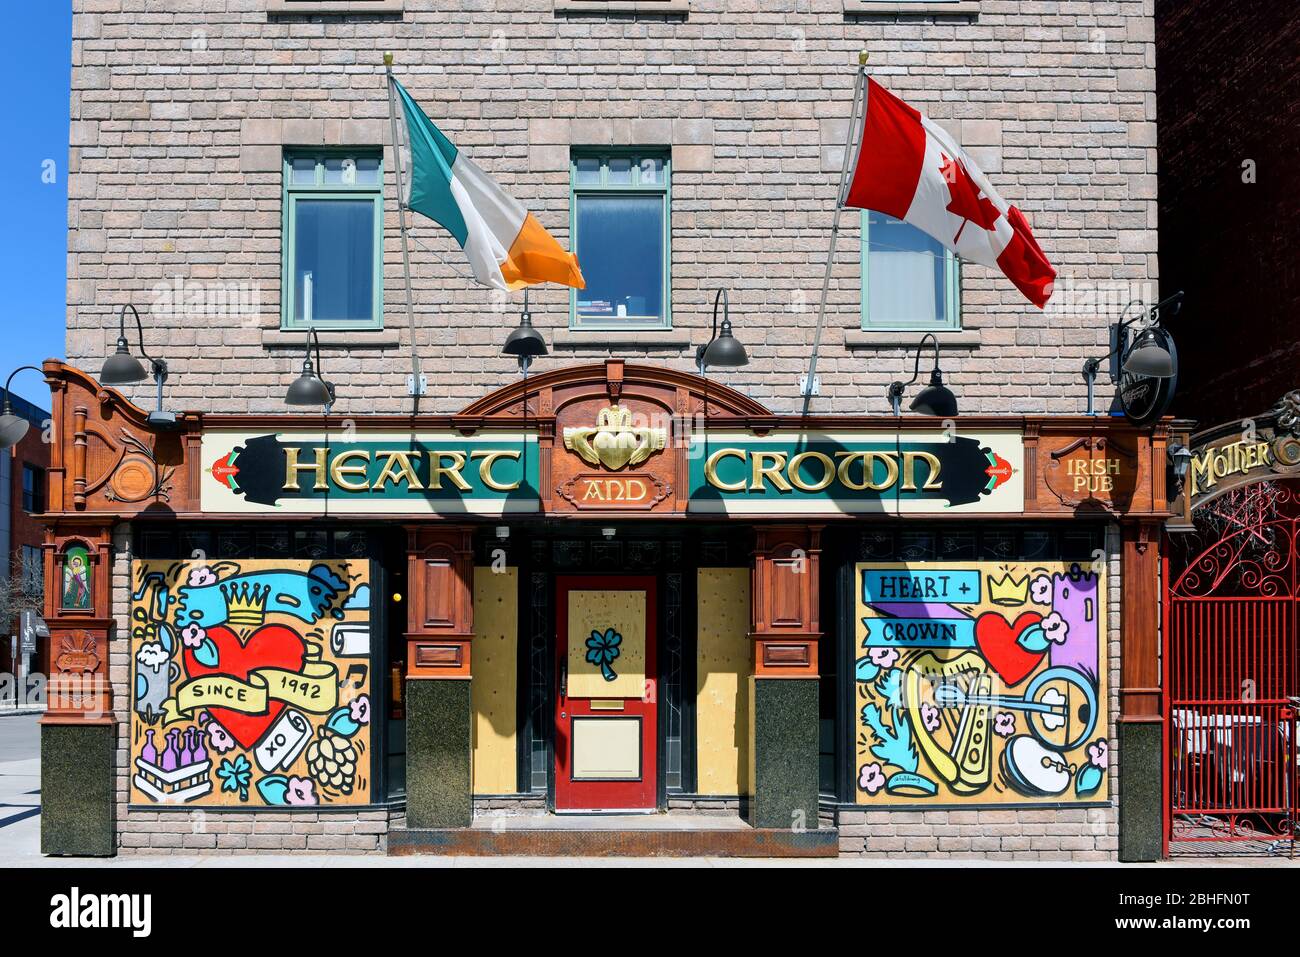 Ottawa, Kanada - 25. April 2020: Die beliebte Bar The Heart and Crown wird während der COVID-19-Sperrmaßnahmen mit einem lokalen Künstler in Auftrag gegeben Stockfoto